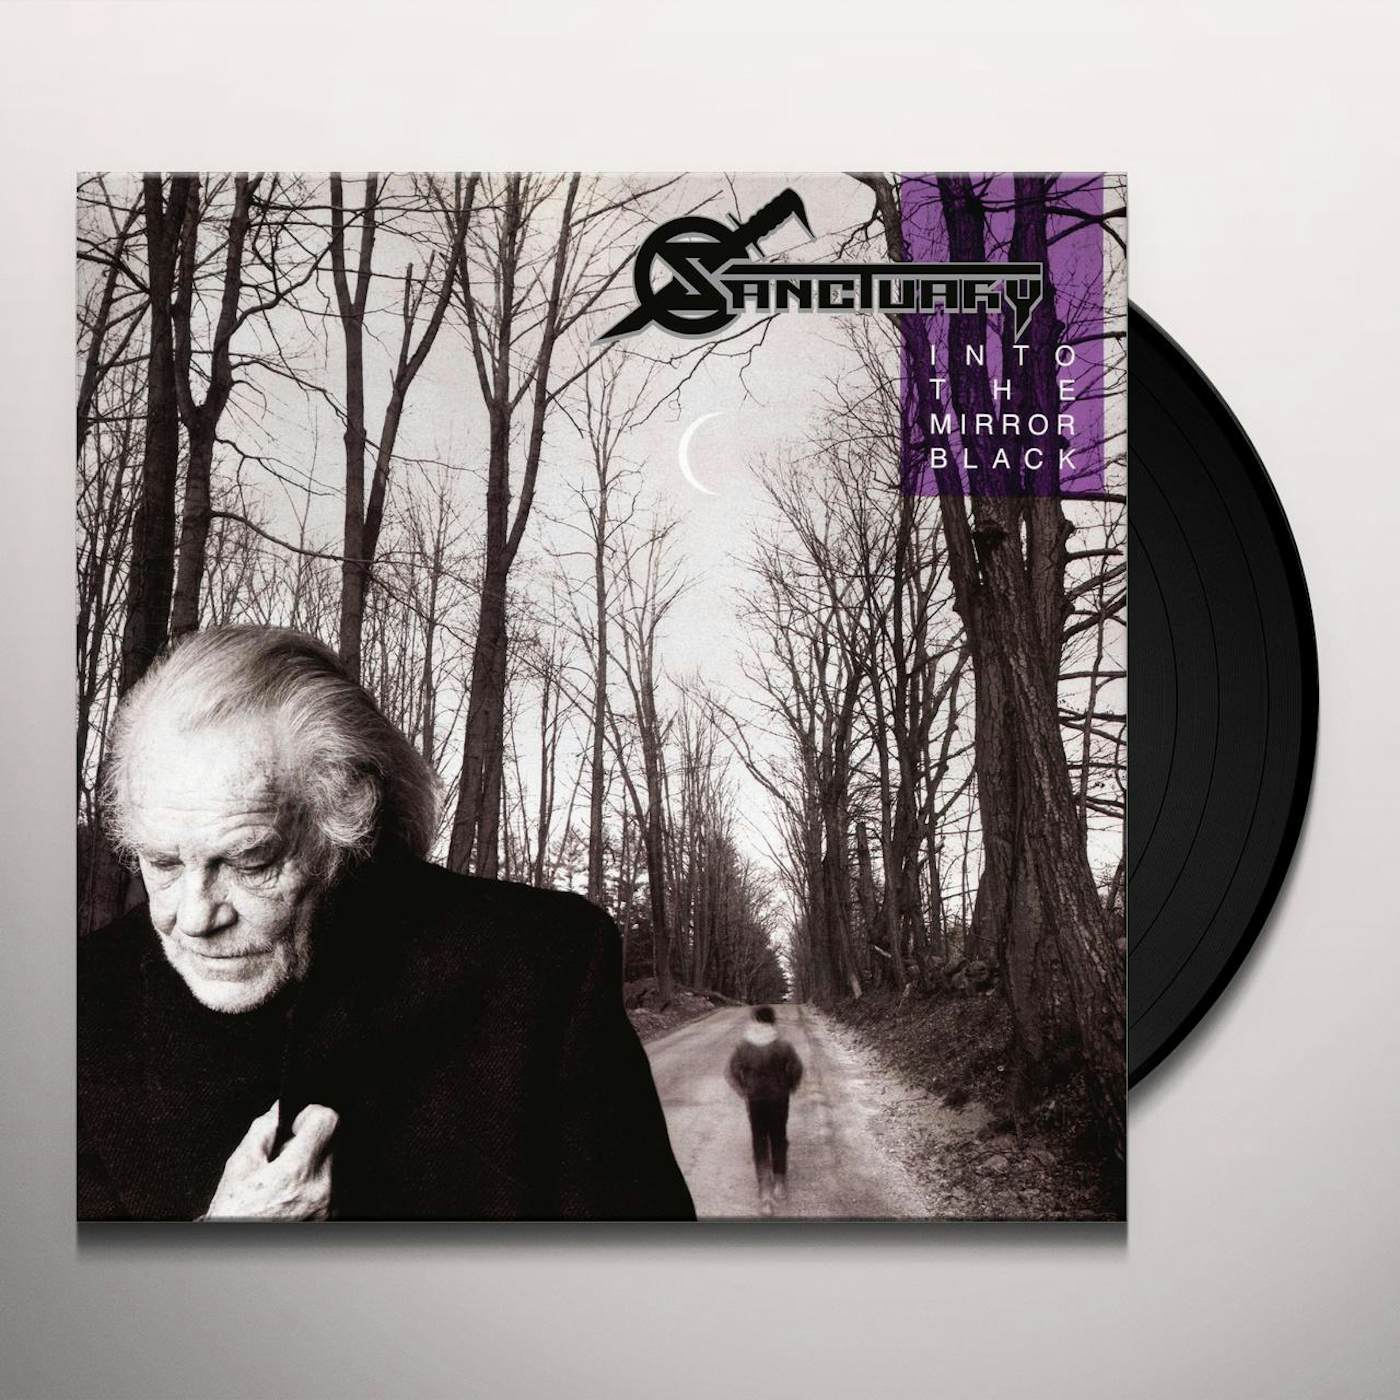 Sanctuary INTO THE MIRROR BLACK: 30TH ANNIVERSARY EDITION Vinyl Record